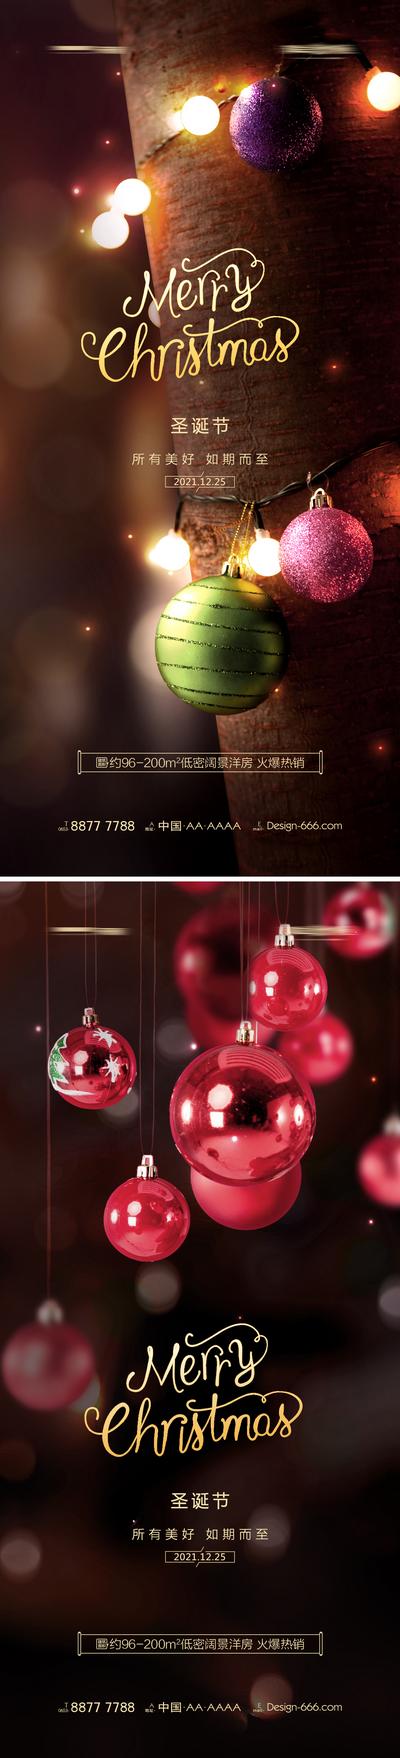 南门网 海报 地产 公历节日 圣诞节 彩灯 圣诞树 圣诞球 